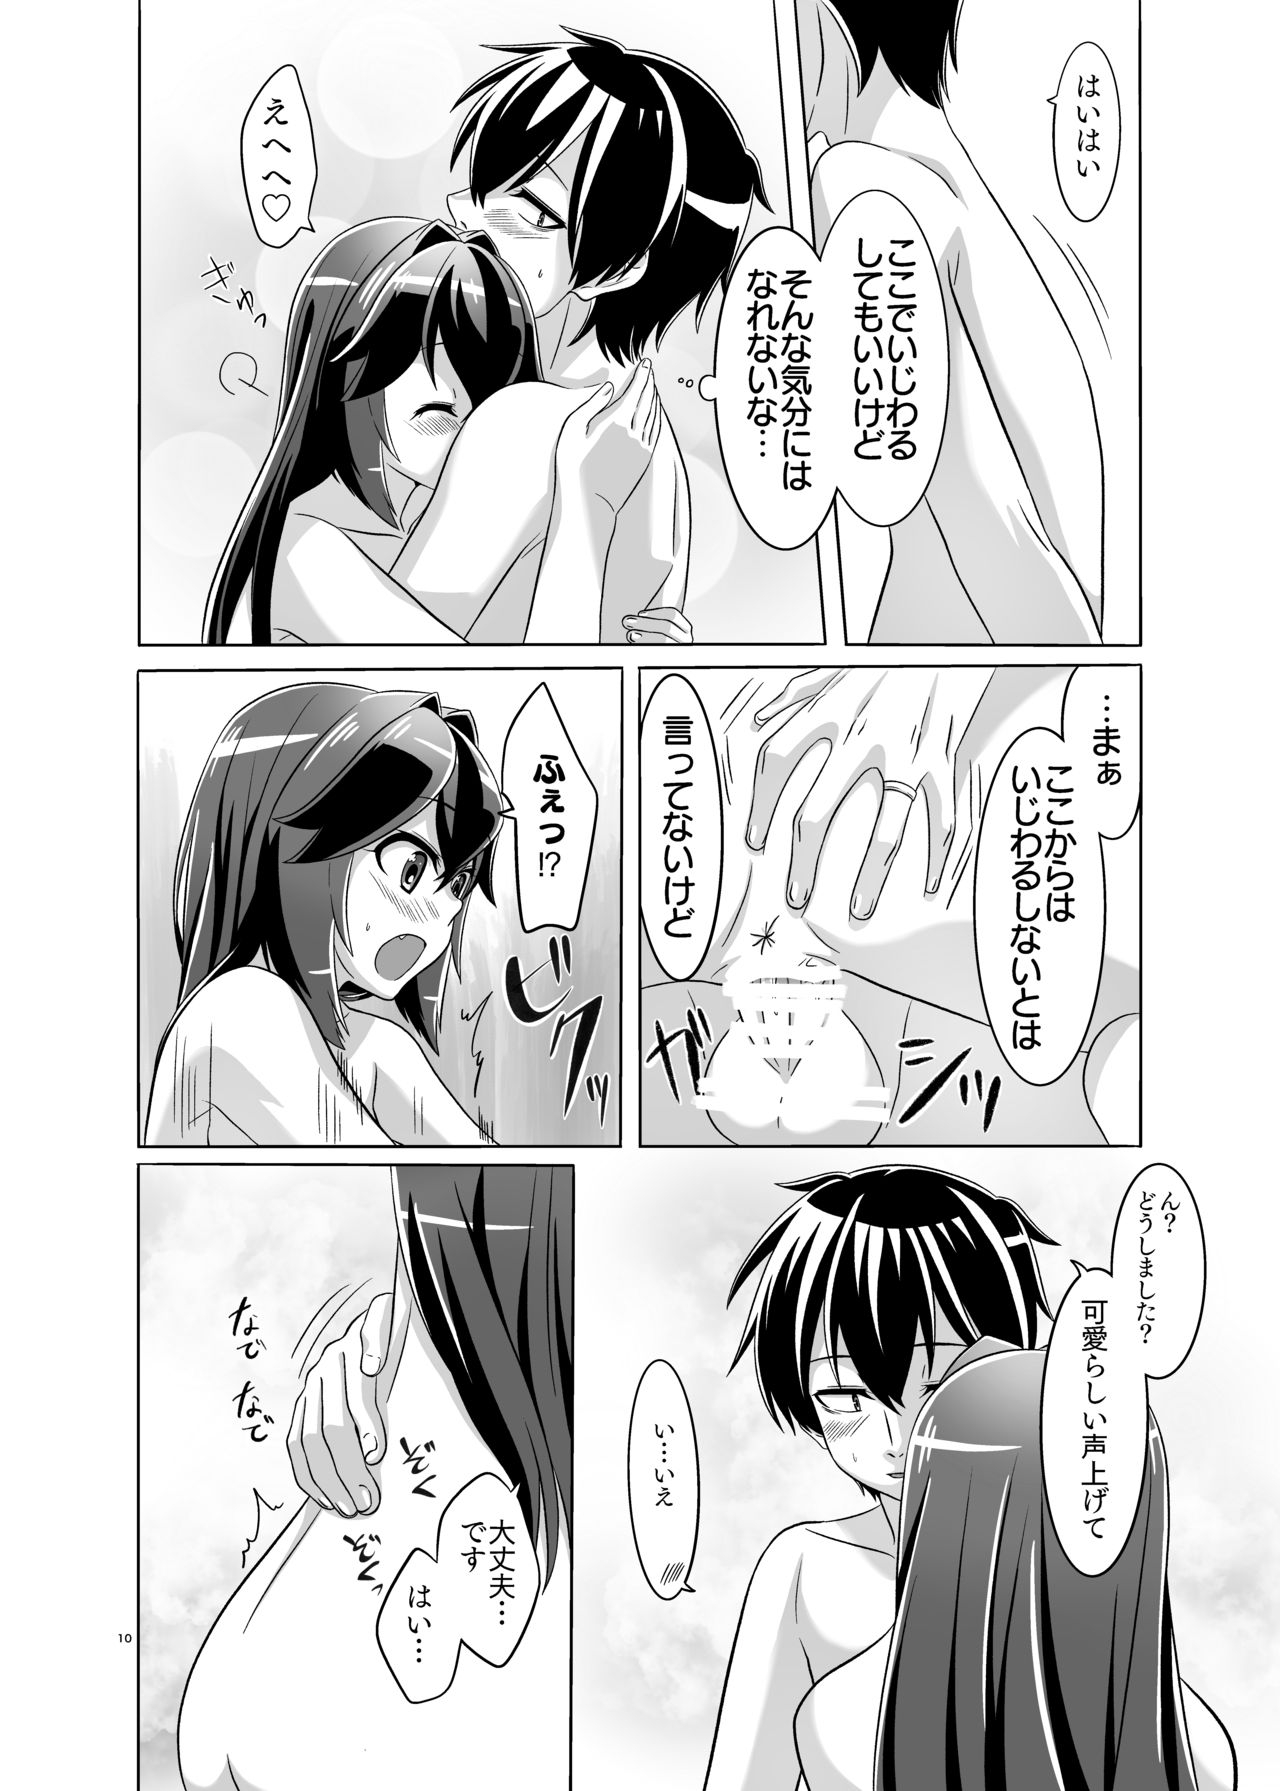 [Torutī-ya] Itsumo no yoru futari no yotogi⑵ (Warship Girls R) page 11 full